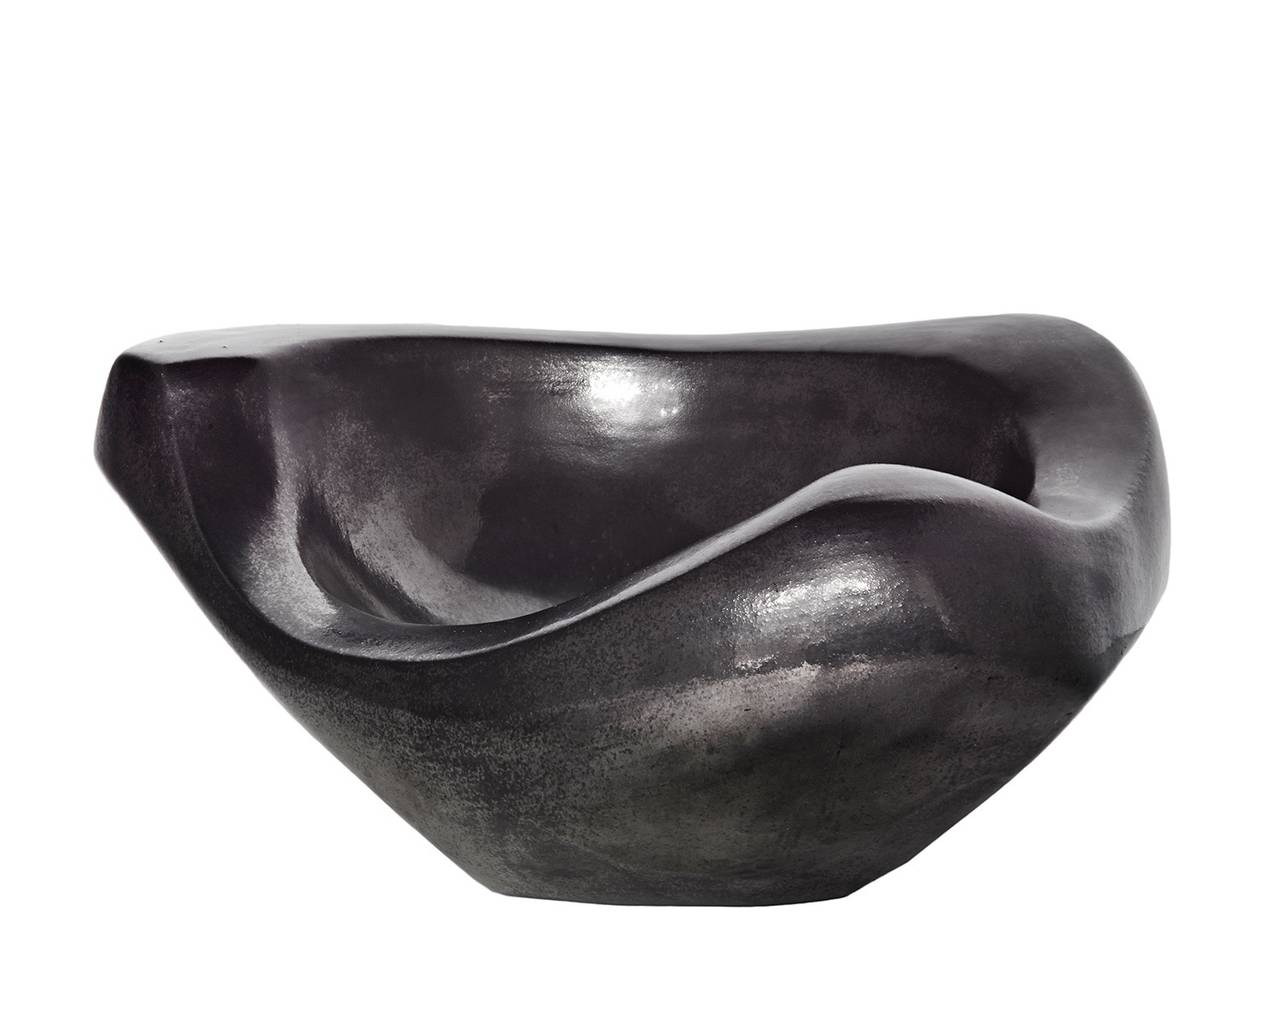 Sculptural Bowl by Georges Jouve 1